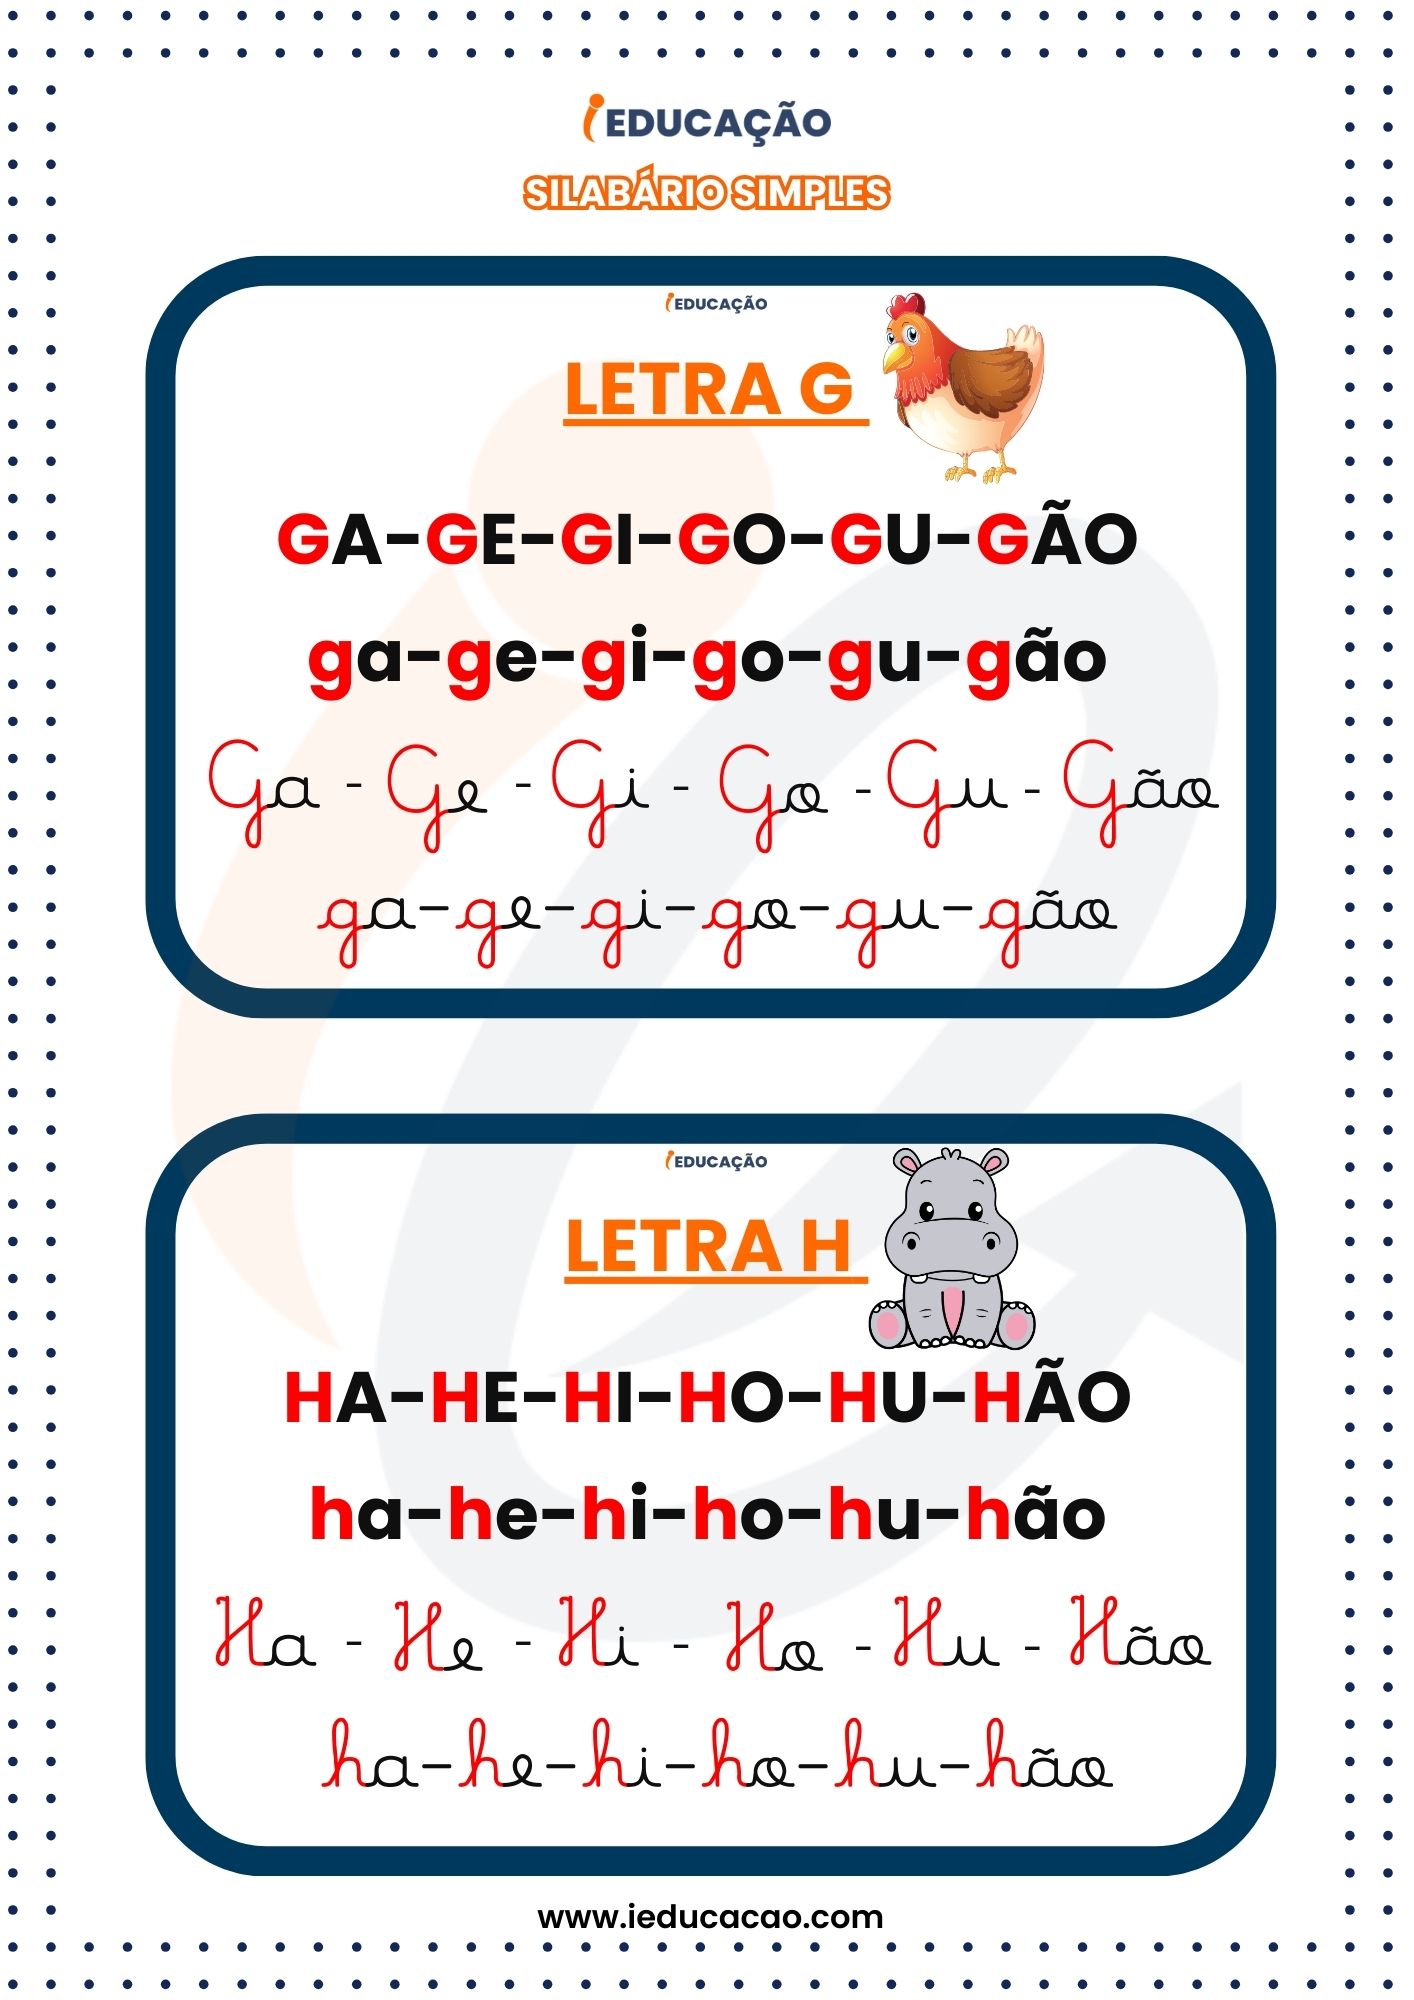 Silabário Simples Quatros Tipos de Letras- g e h